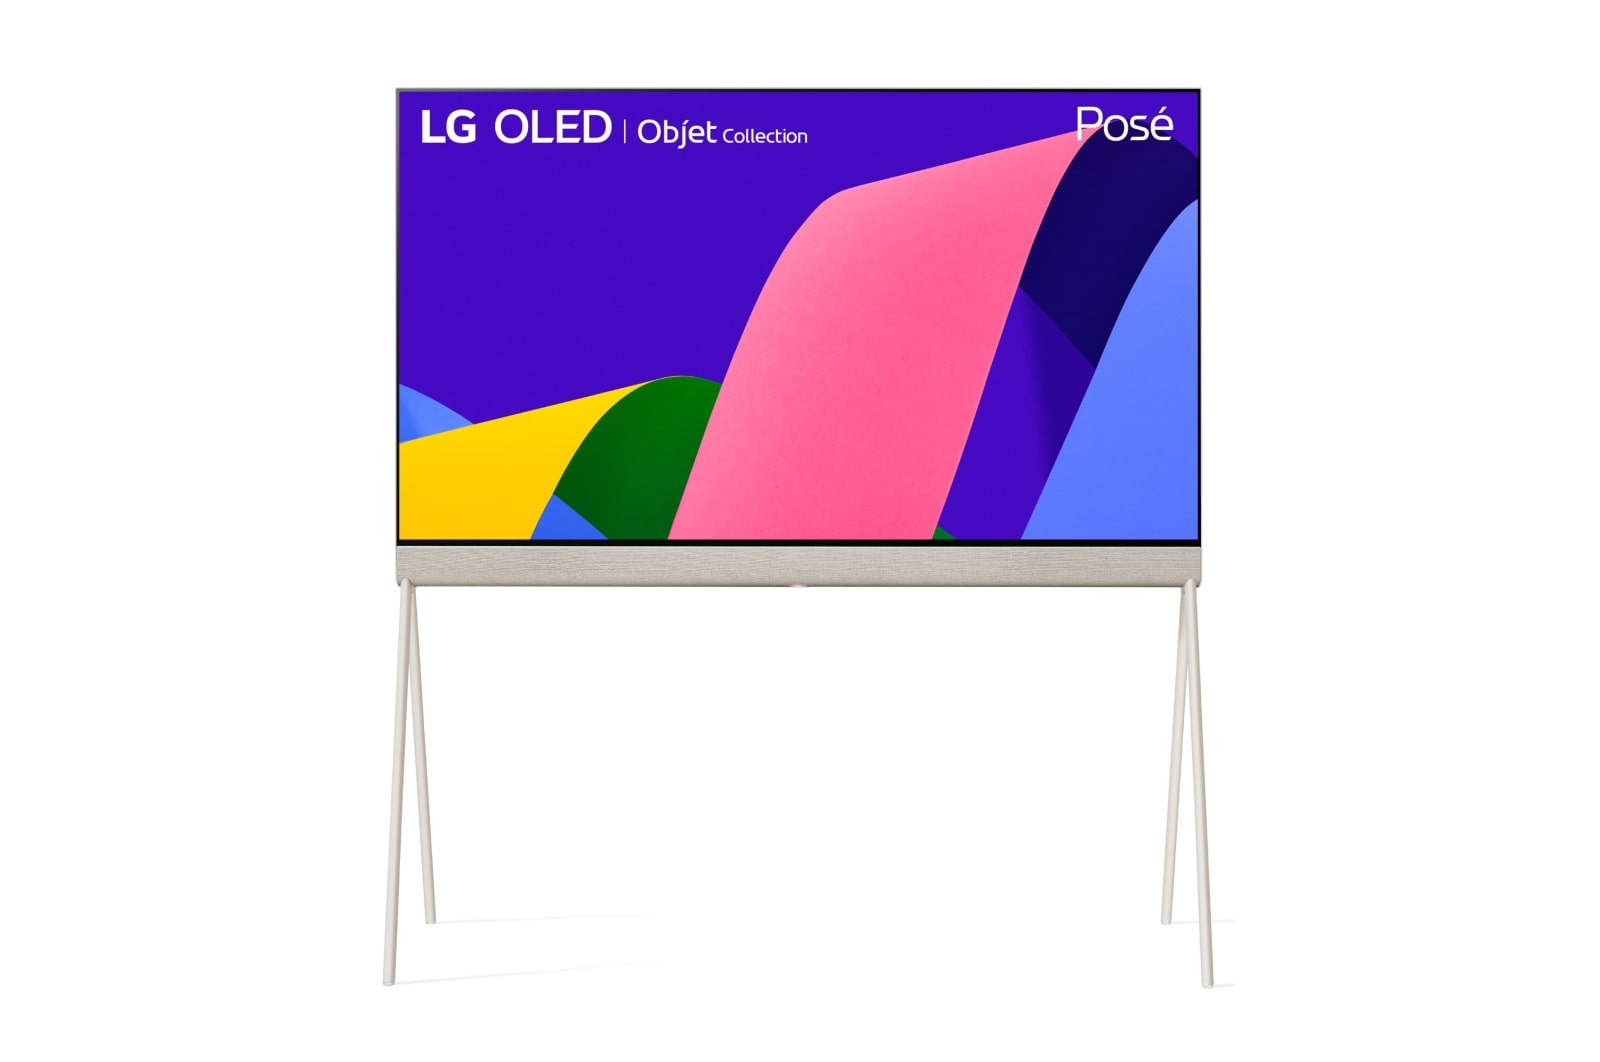 LG TV LG  4K OLED evo POSE, Procesador Inteligente de Máxima Potencia 4K a9 Gen 5 con IA, compatible con el 100% de formatos HDR, HDR Dolby Vision y Dolby Atmos.  Smart TV webOS22, el mejor TV para Gaming. , 55LX1Q6LA